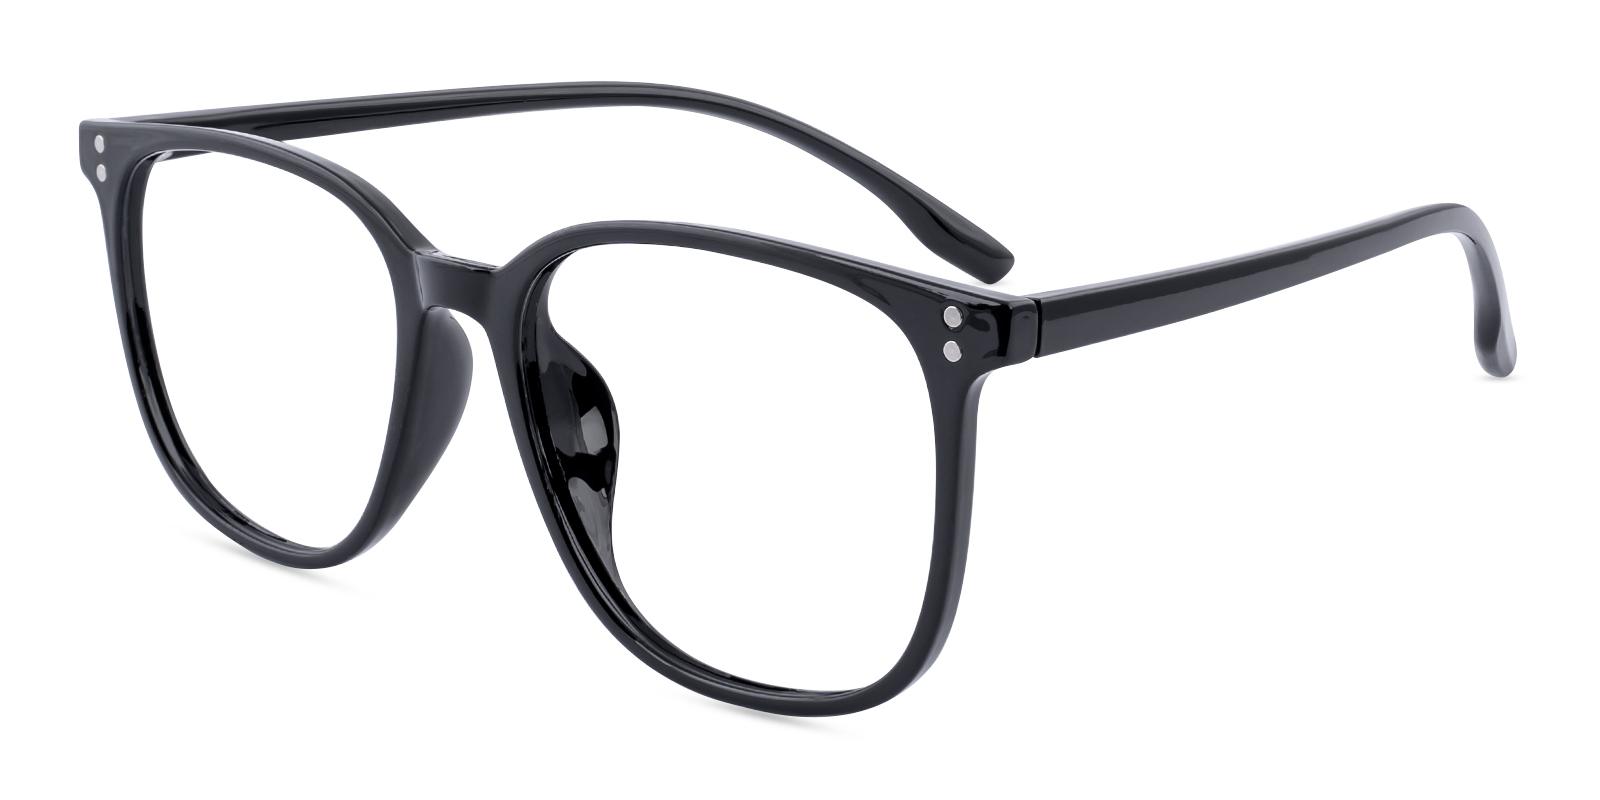 Prosster Black Plastic Eyeglasses , Lightweight , UniversalBridgeFit Frames from ABBE Glasses